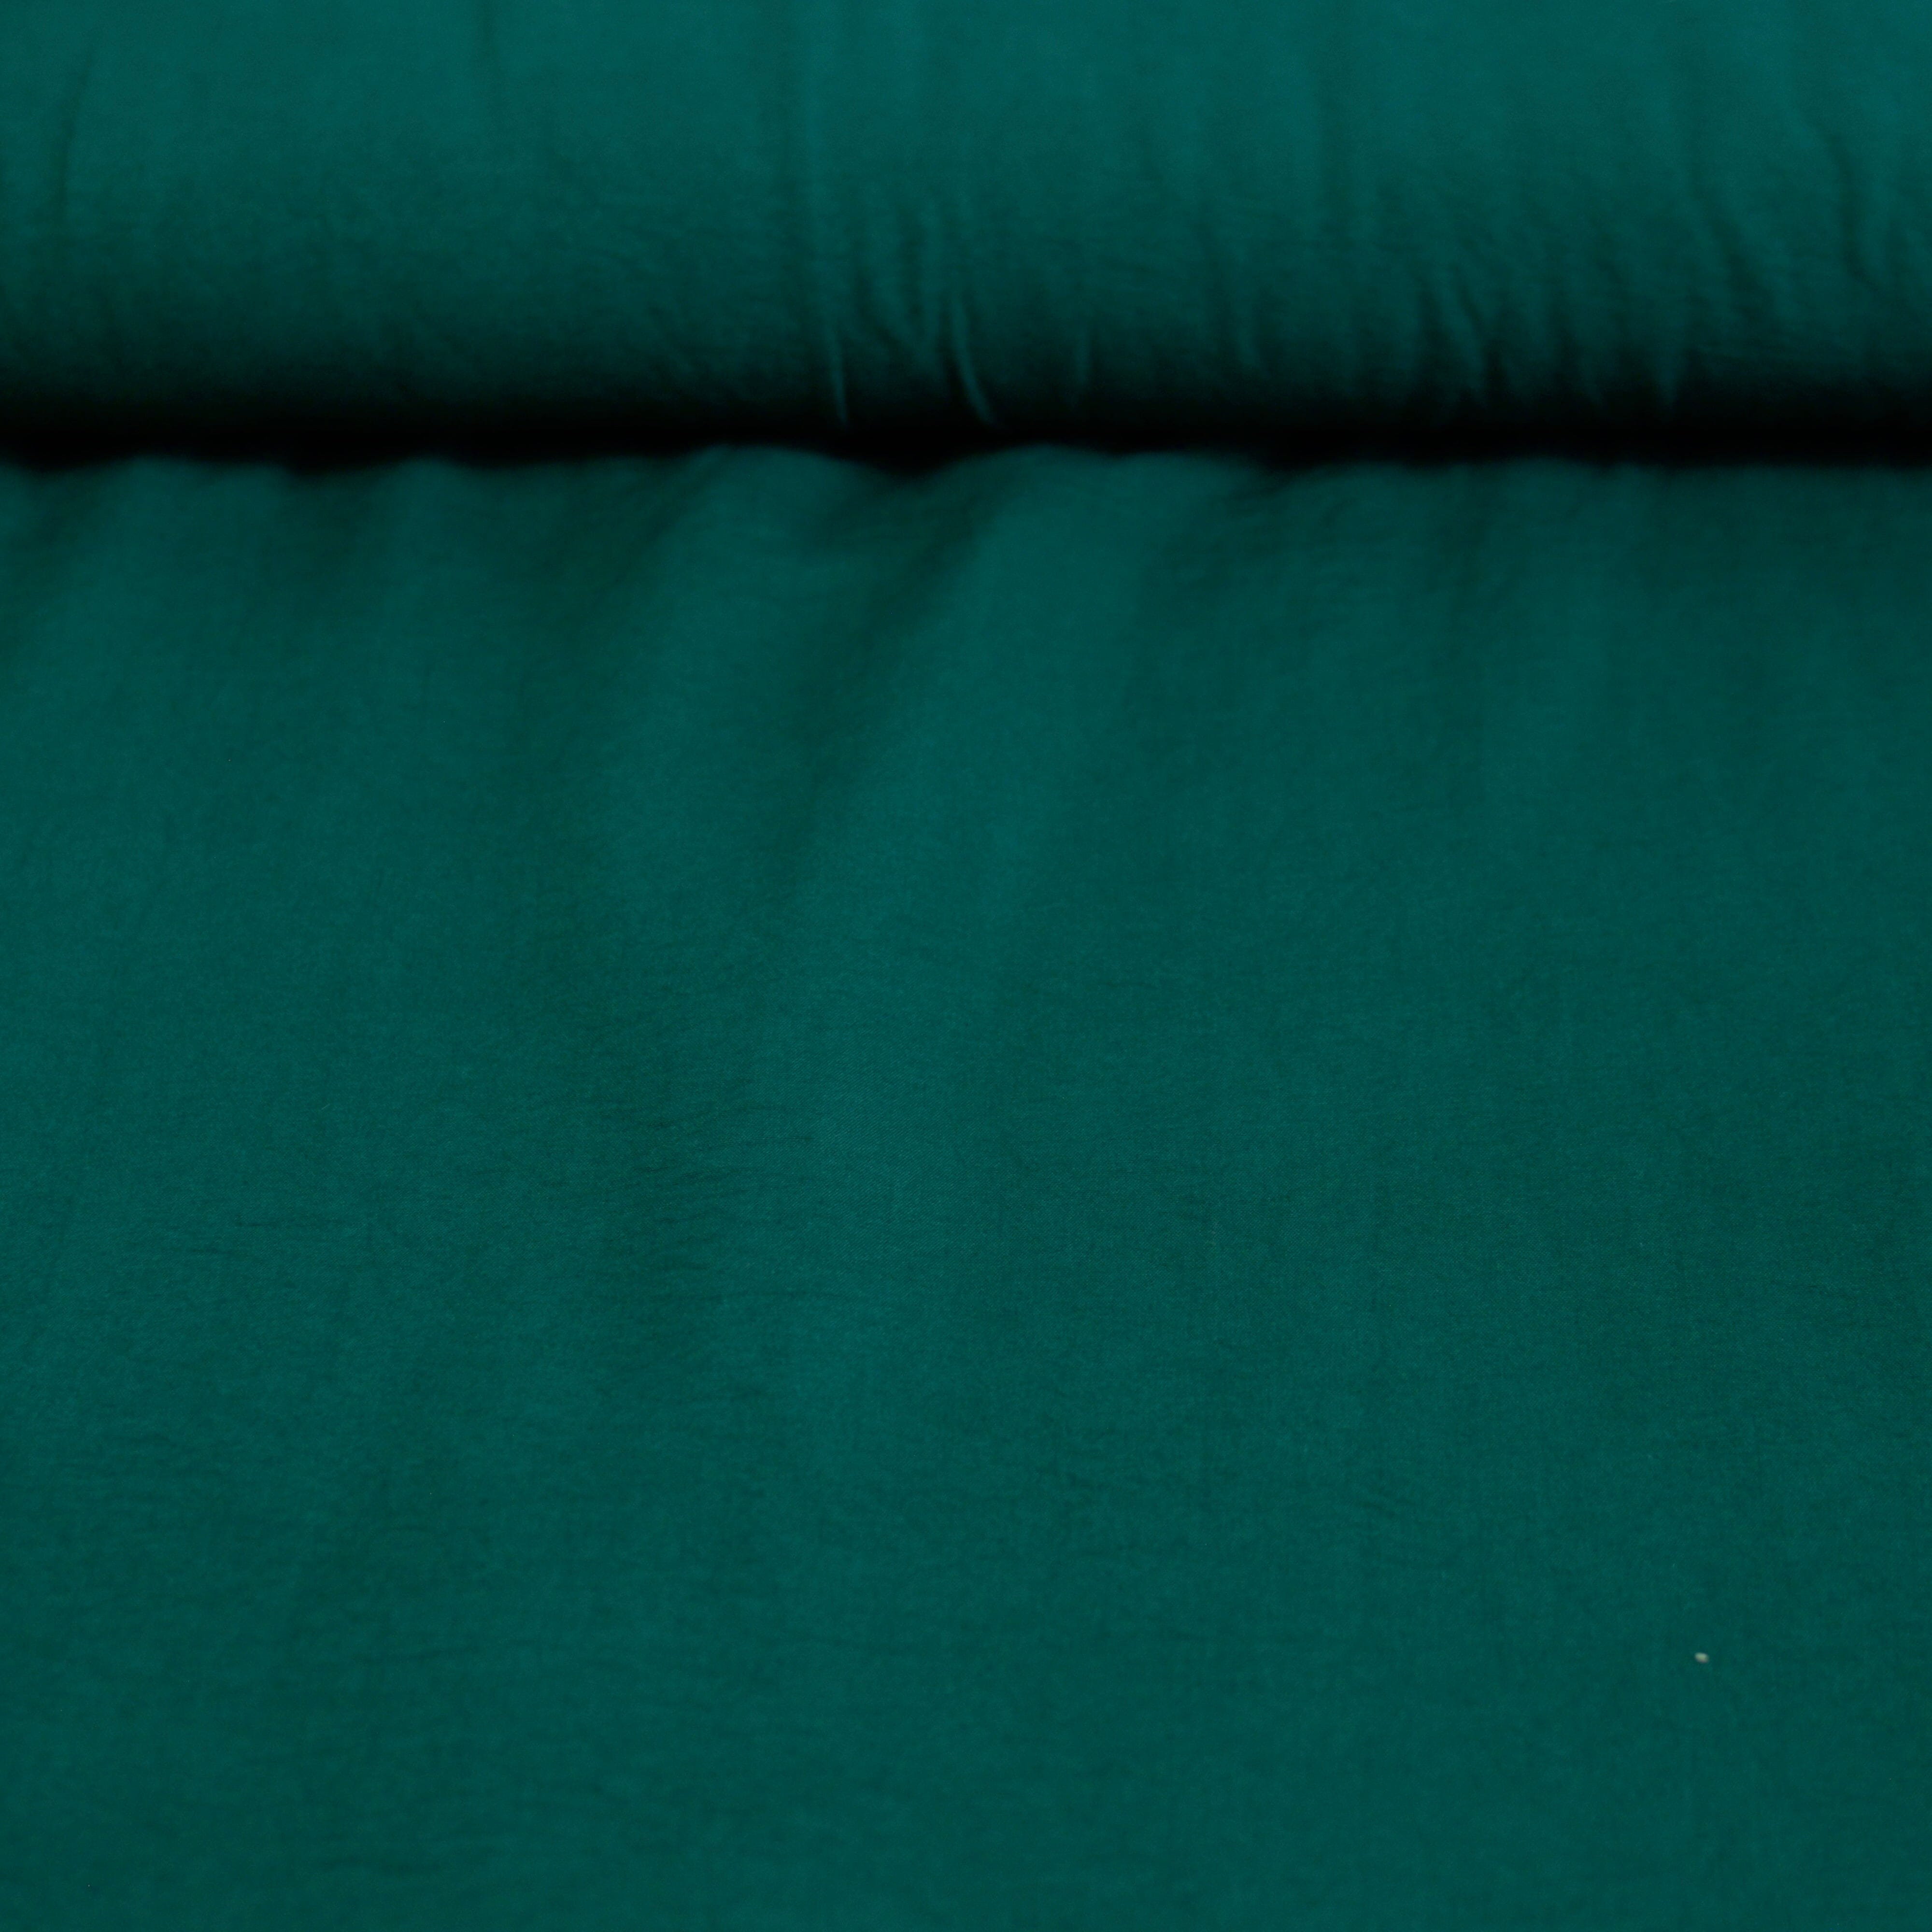 Classy knitterarme Webware Velvet Touch - dunkelgrün Fabric poshpinks